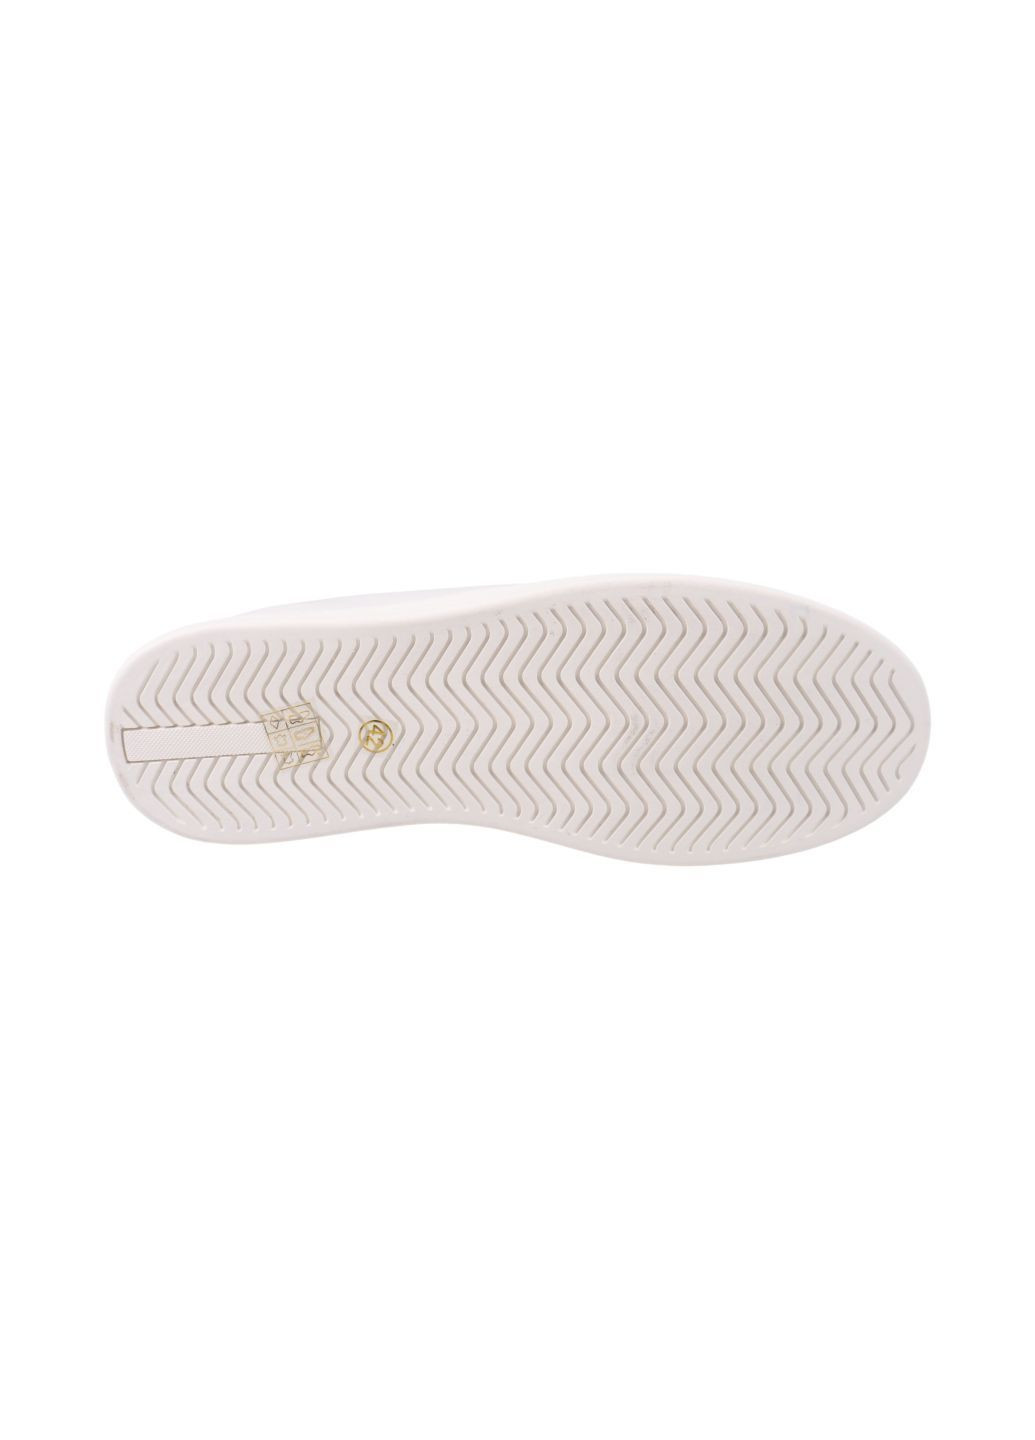 Туфлі чоловічі білі натуральна шкіра Lifexpert 1607-24ltcp (285819307)